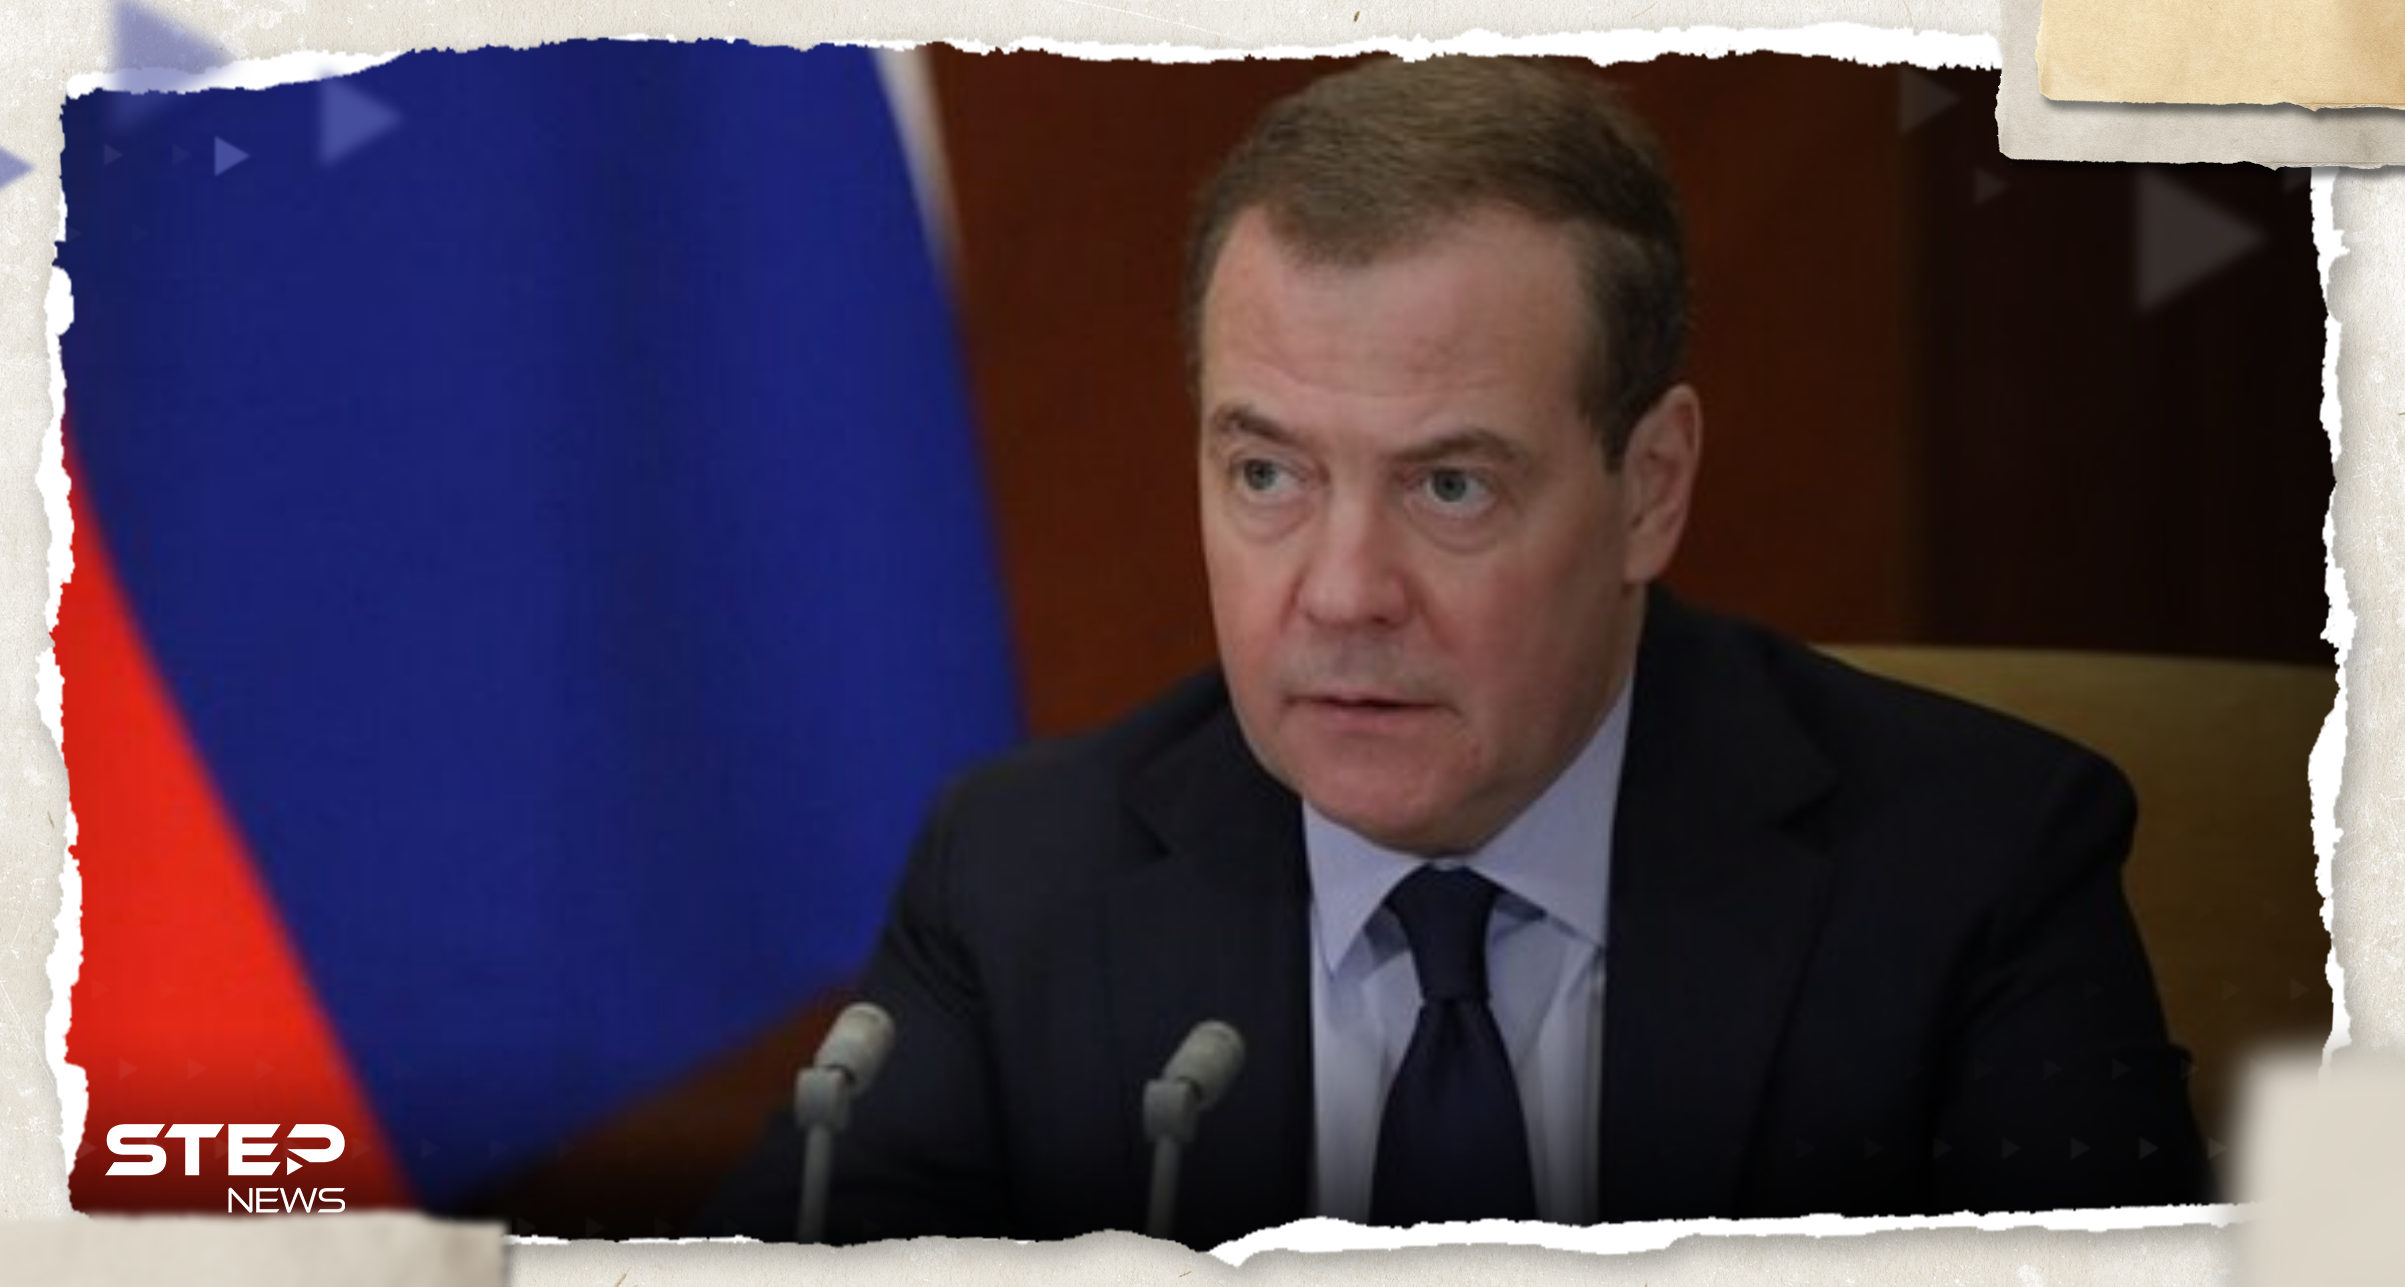 ميدفيديف يحذر من خطوات دولة آسيوية وما تفعله في المنطقة